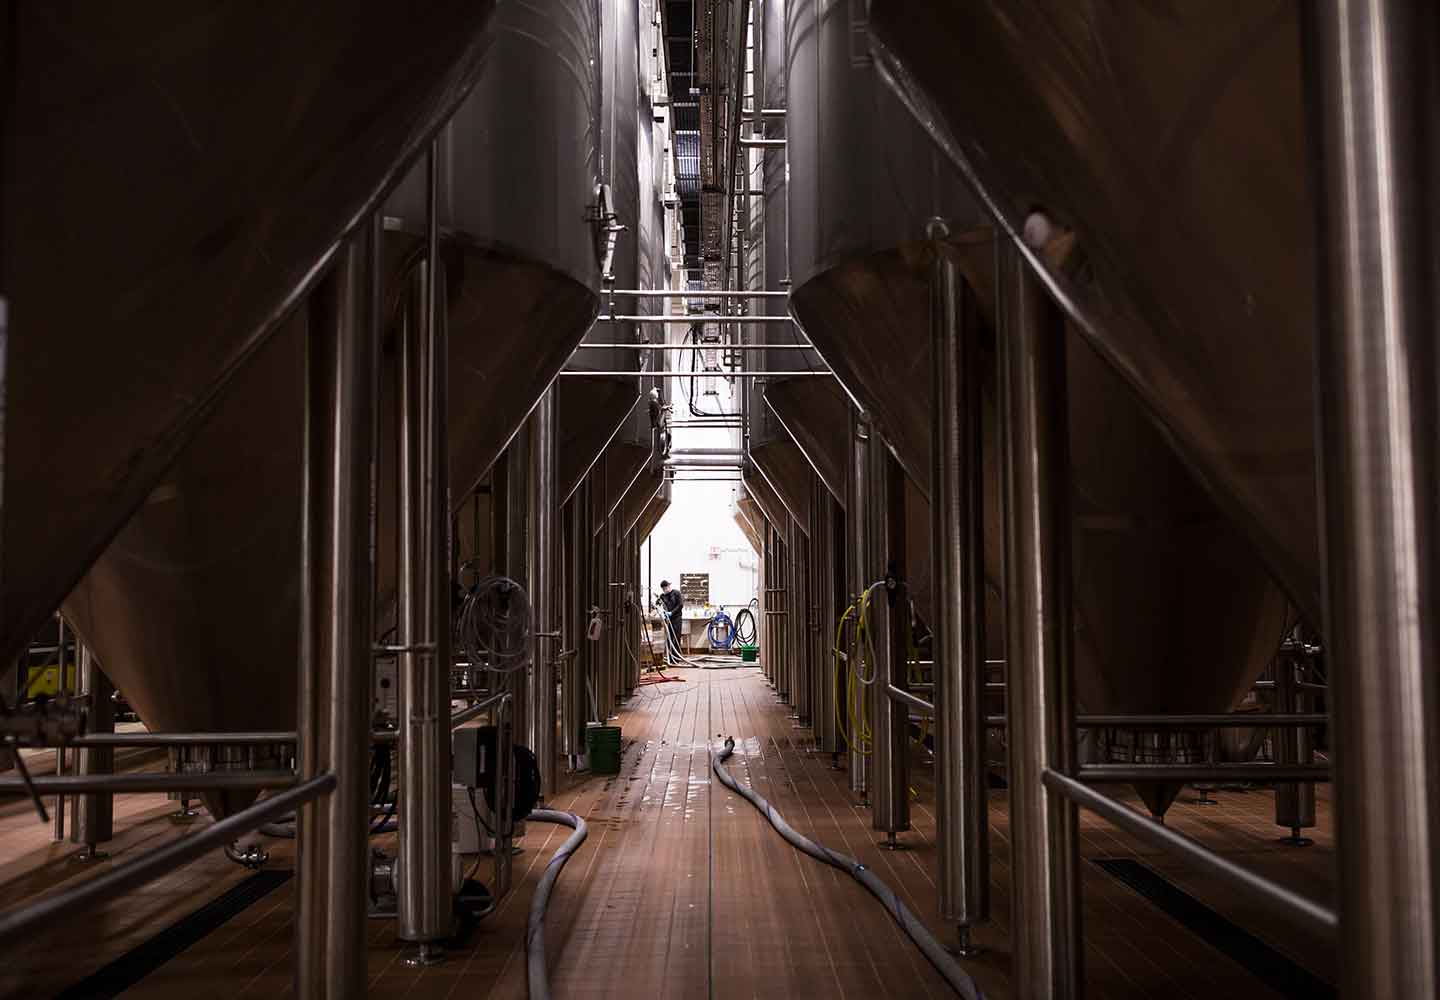 Darker image looking between brewery tanks